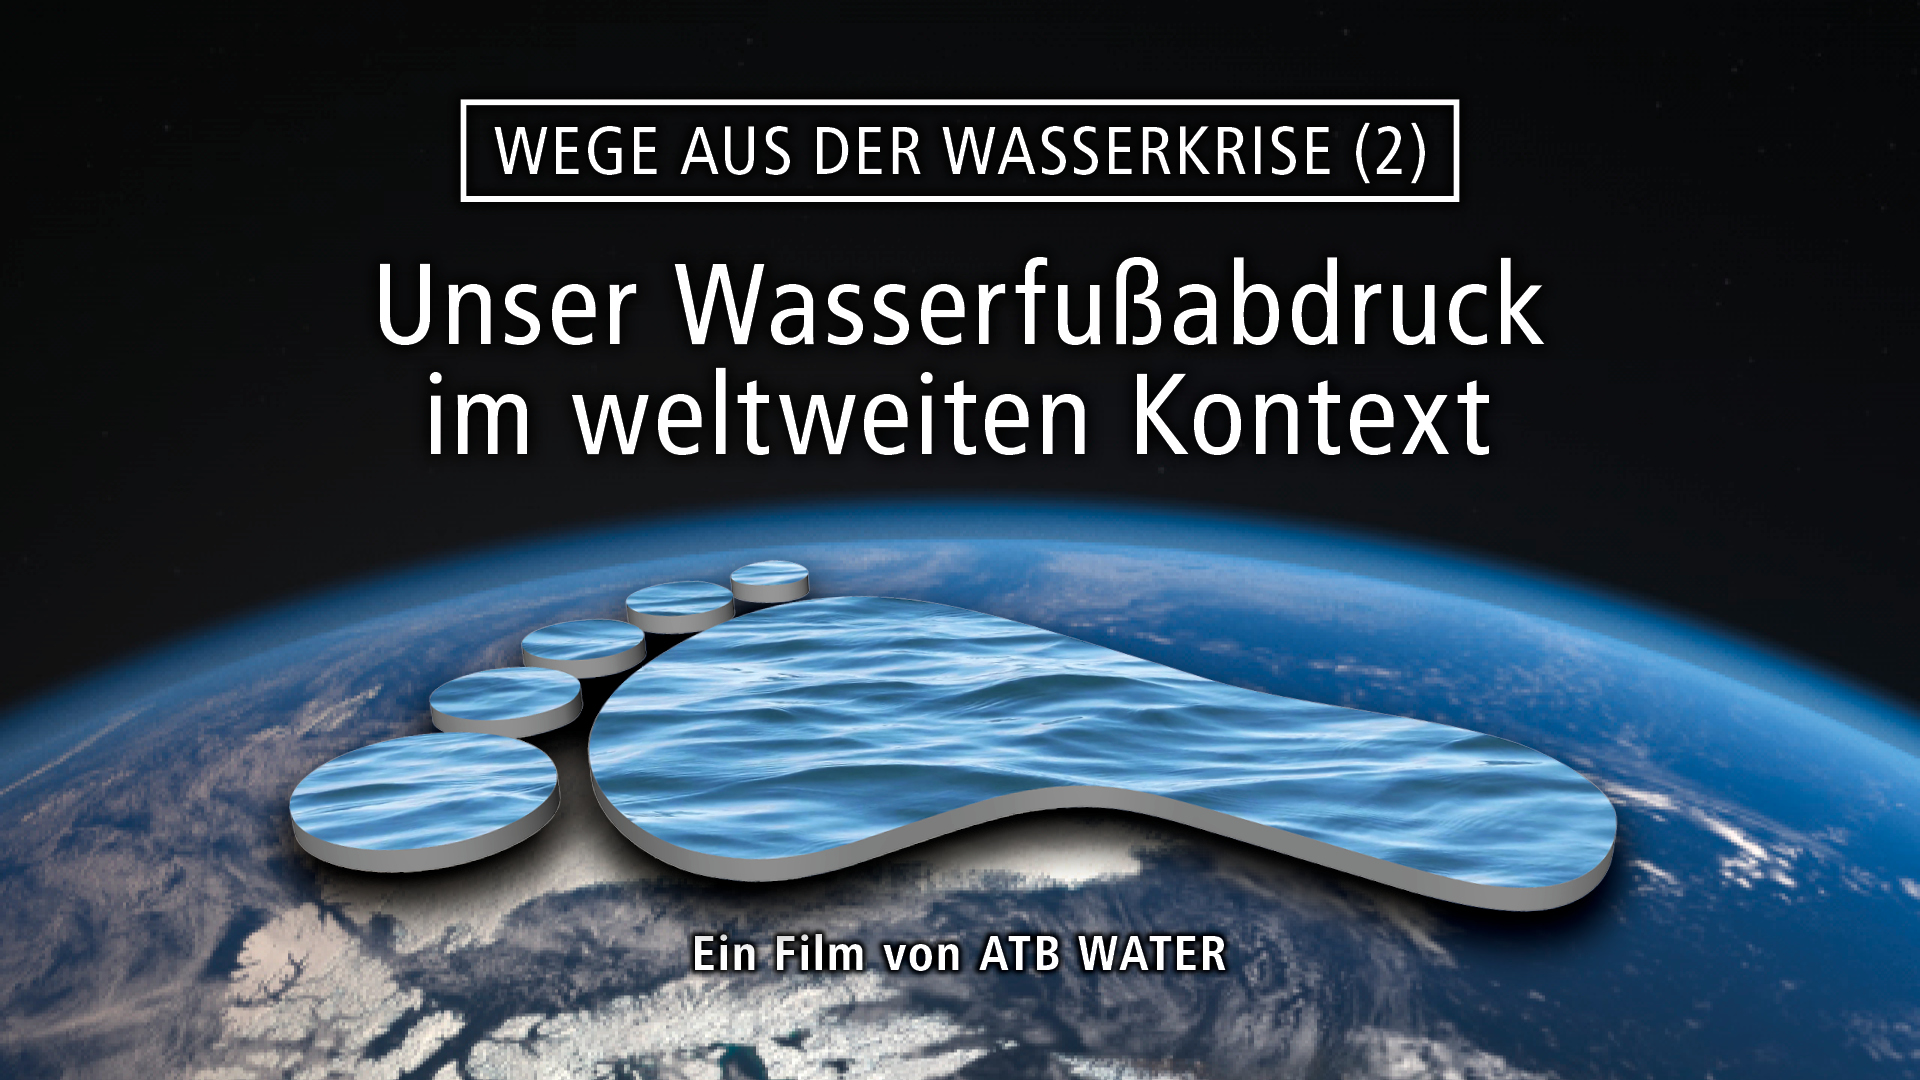 Unser Wasserfußabdruck im weltweiten Kontext